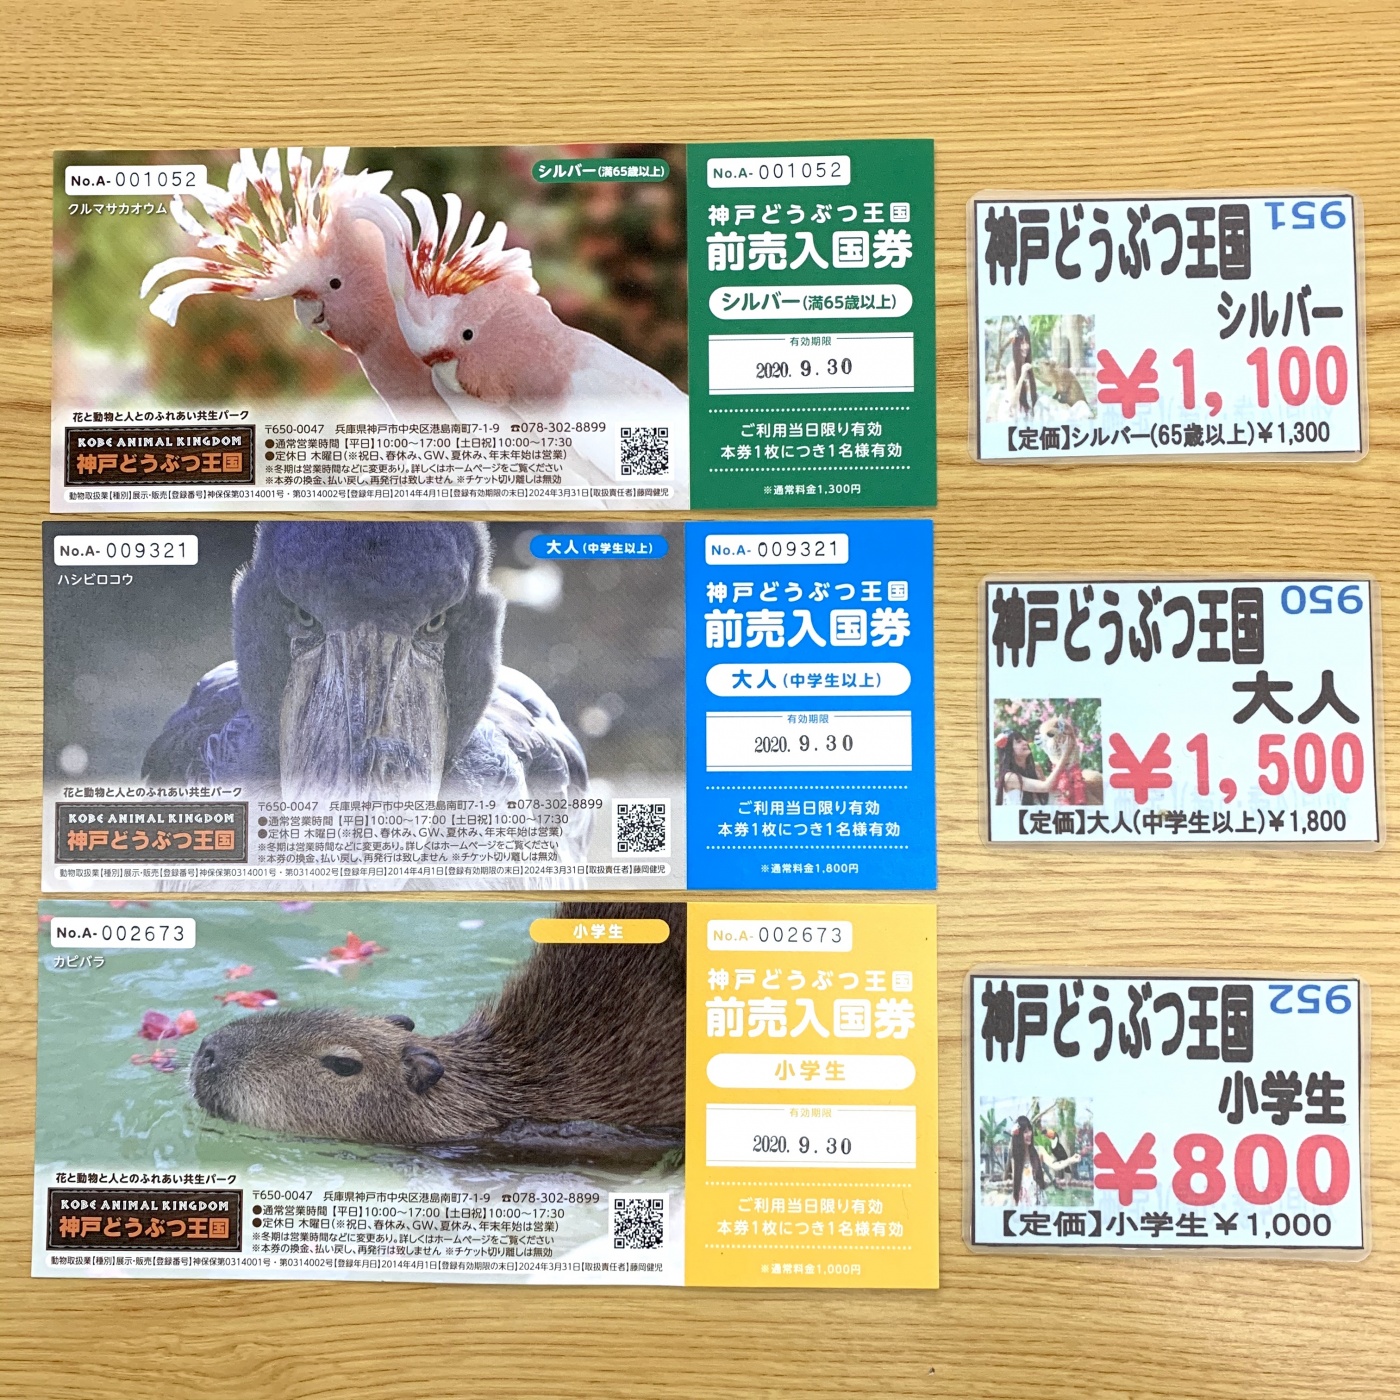 ♡神戸動物王国♡チケット - 動物園